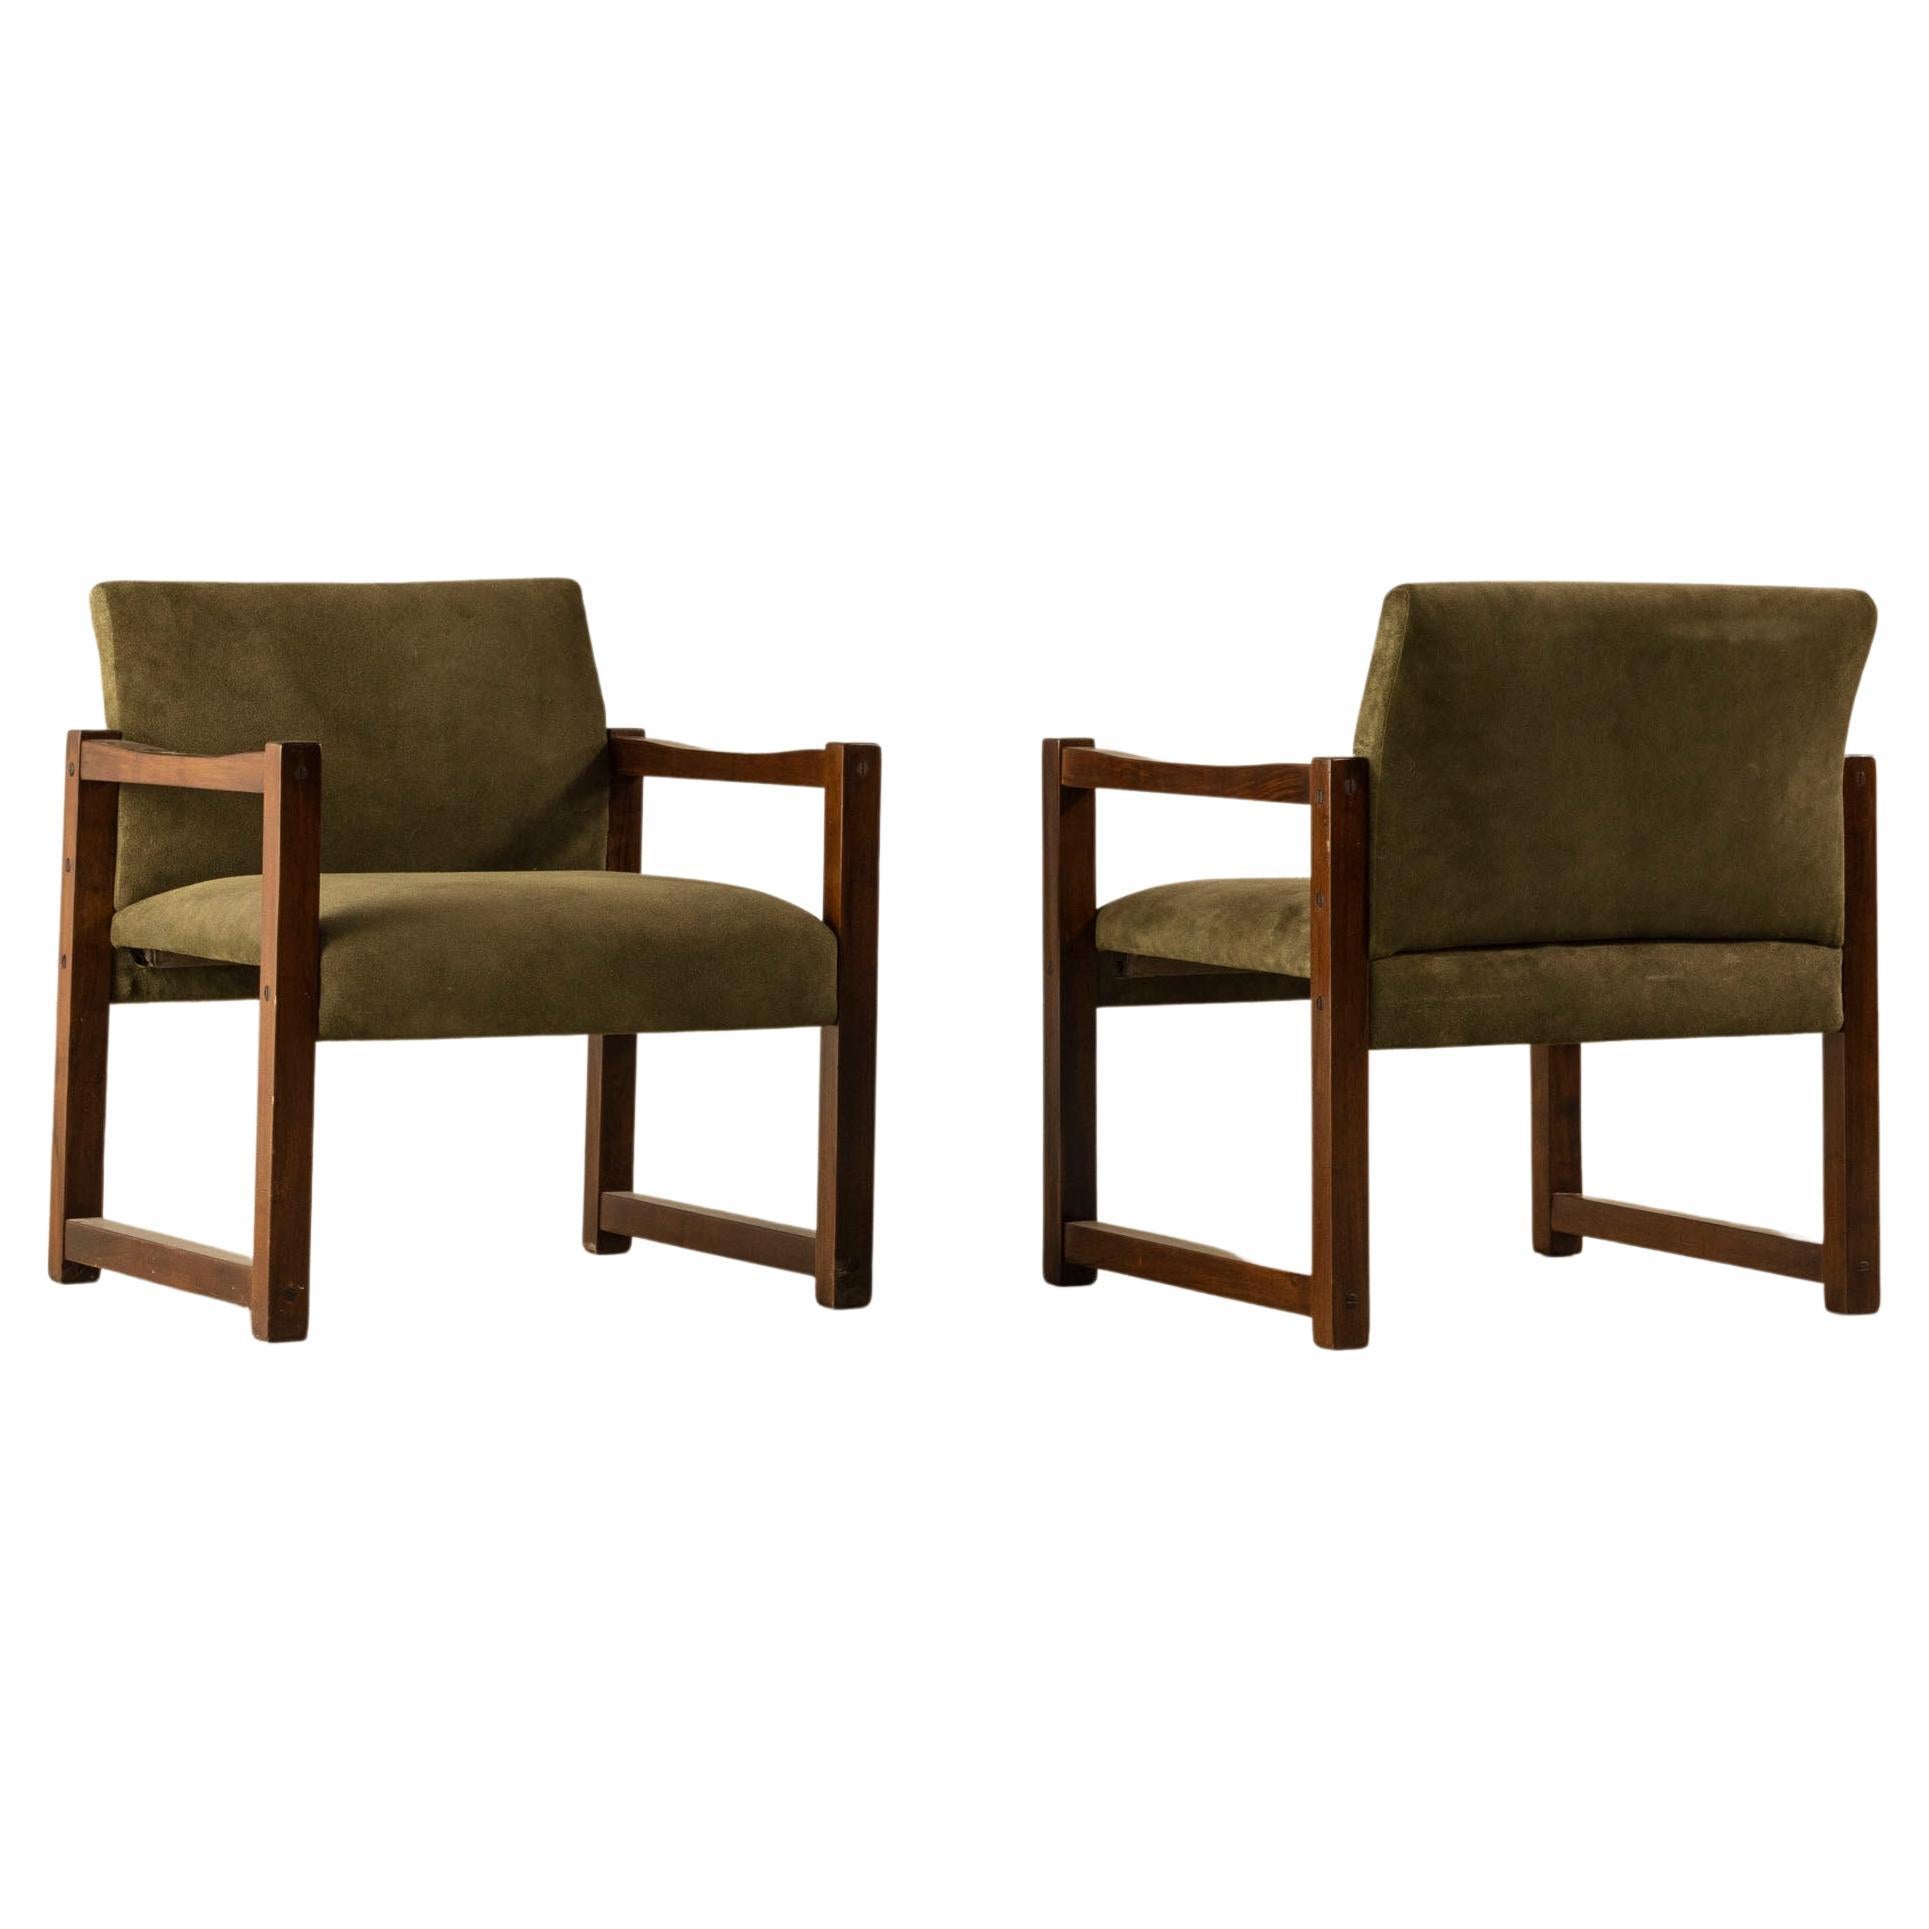 Paire de fauteuils « Square » des années 60 en bois et tissu, design brésilien du milieu du siècle